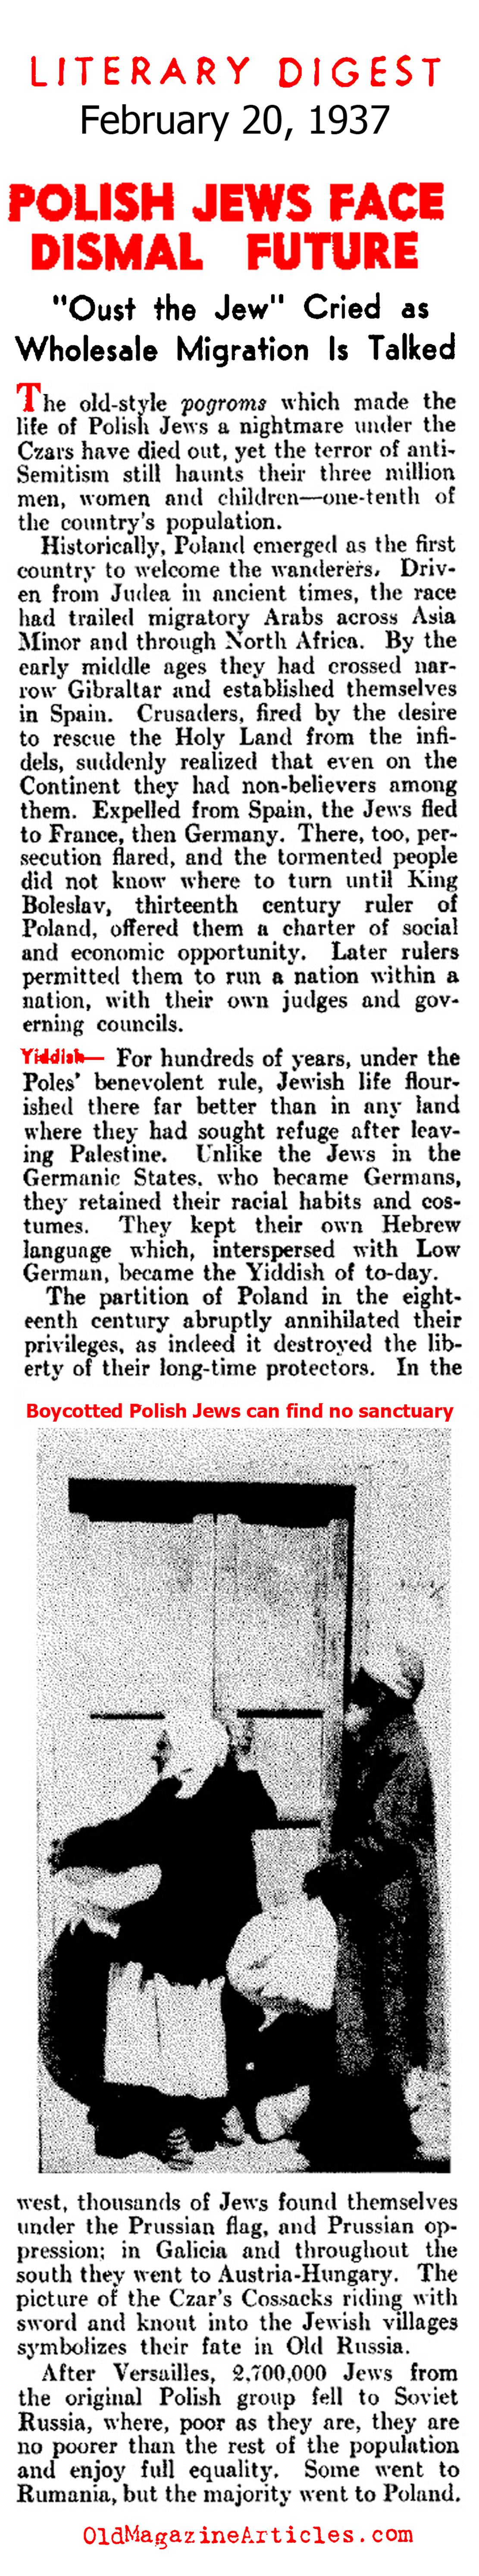 Polish Jews Face Dismal Future (Literary Digest, 1937)